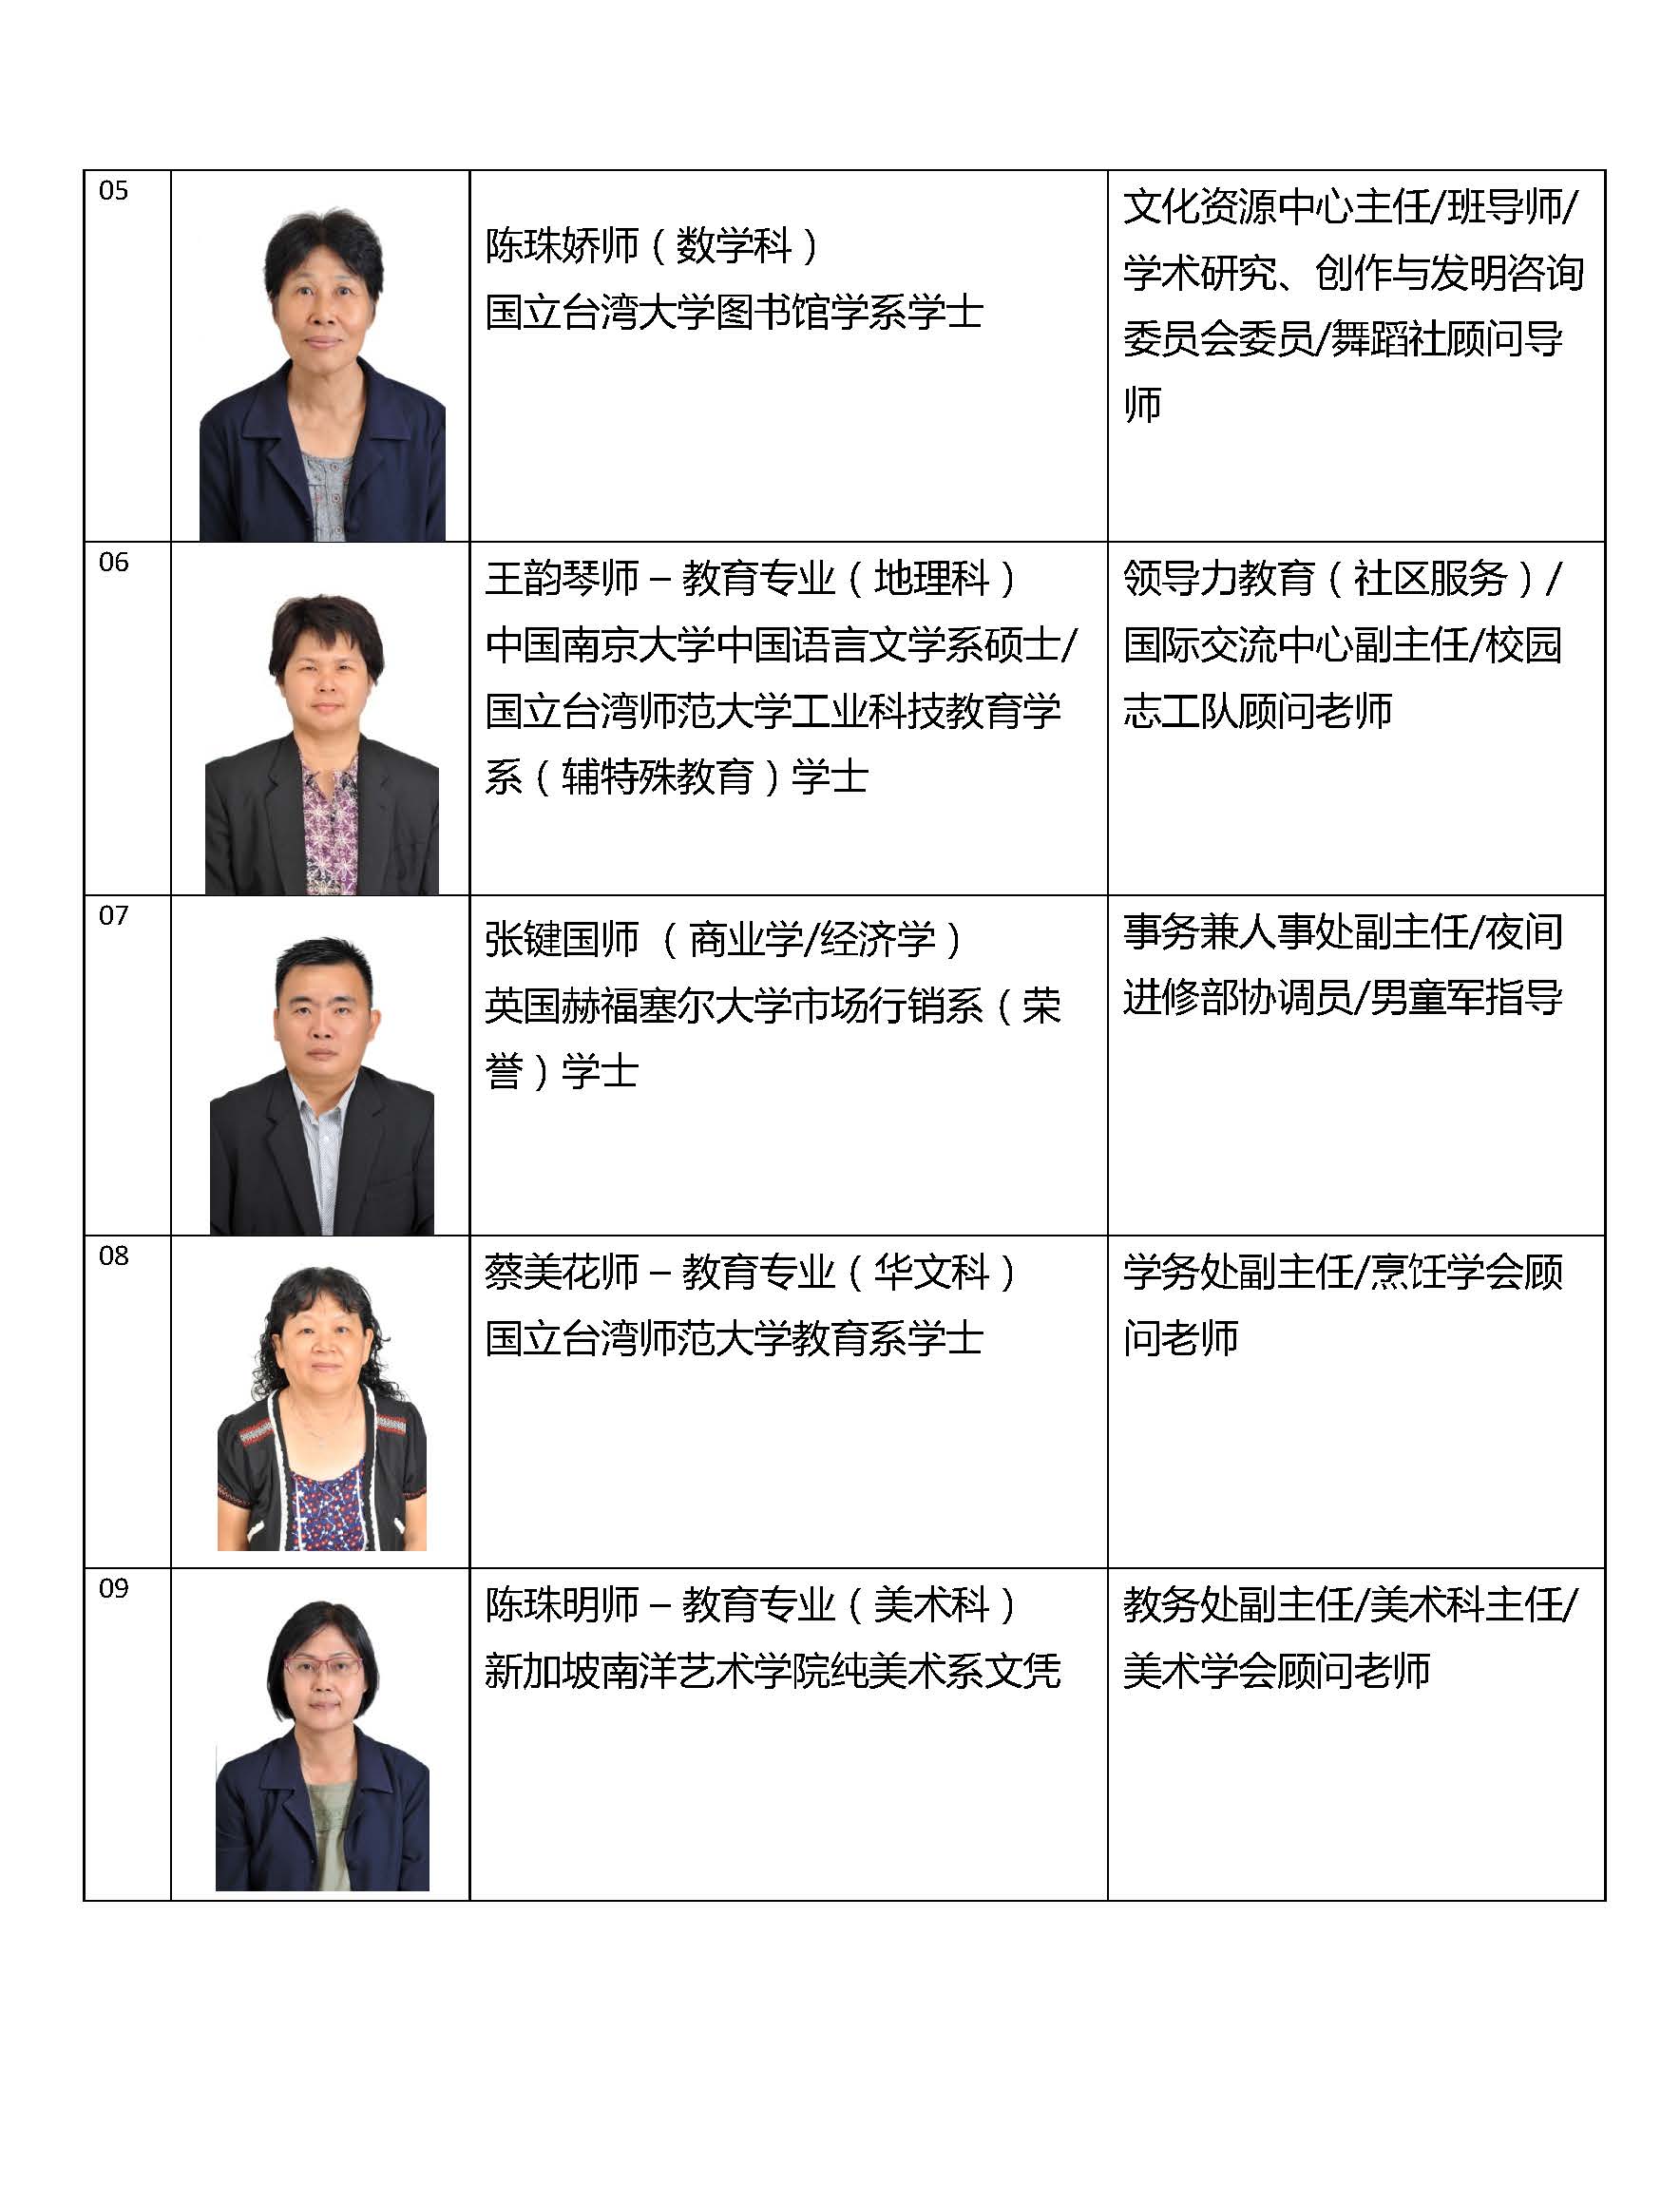 2015教职员照片名表_Page_02